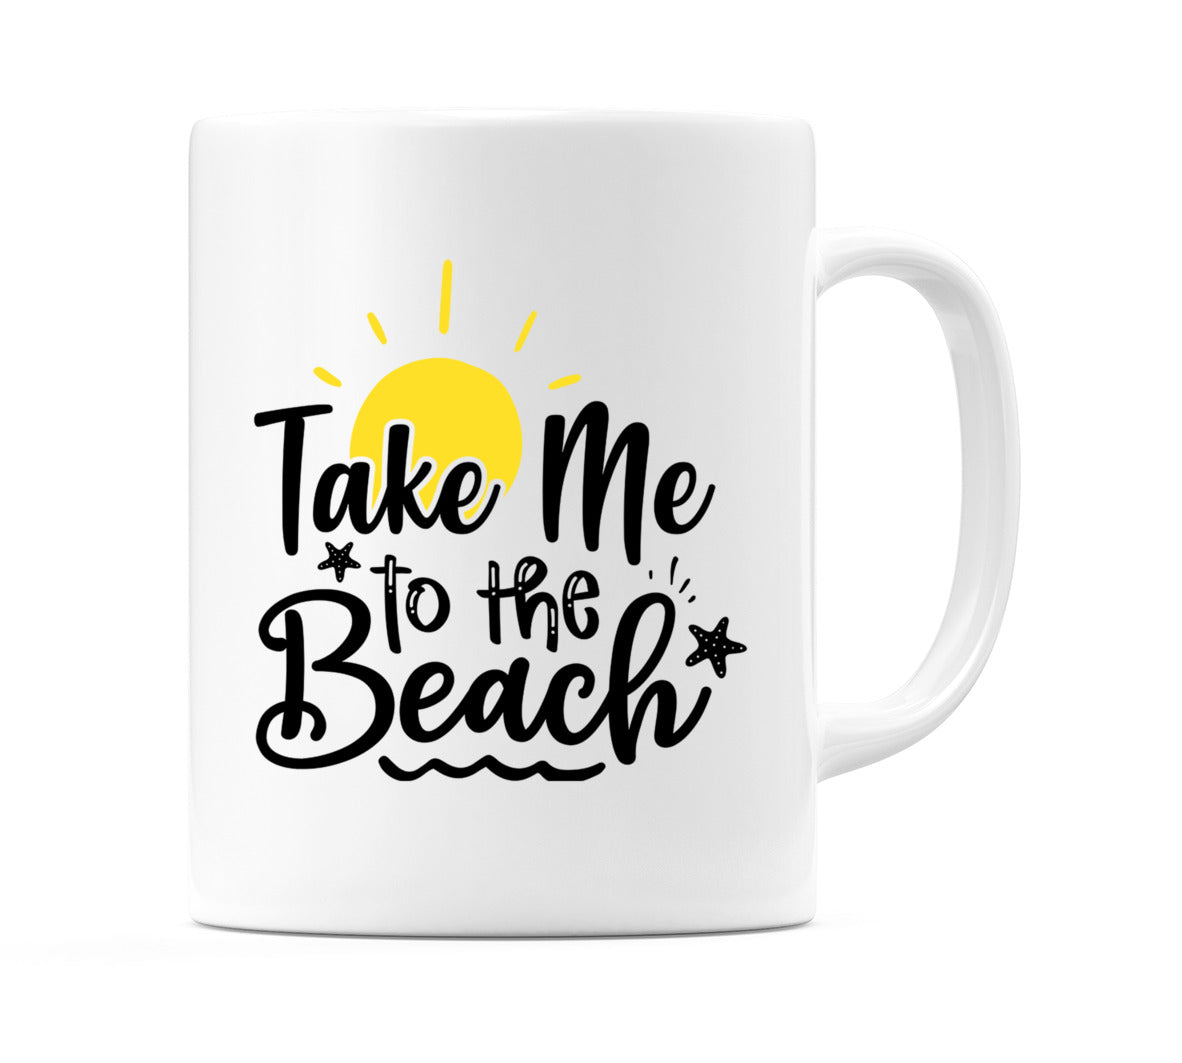 Take me to the beach Mug